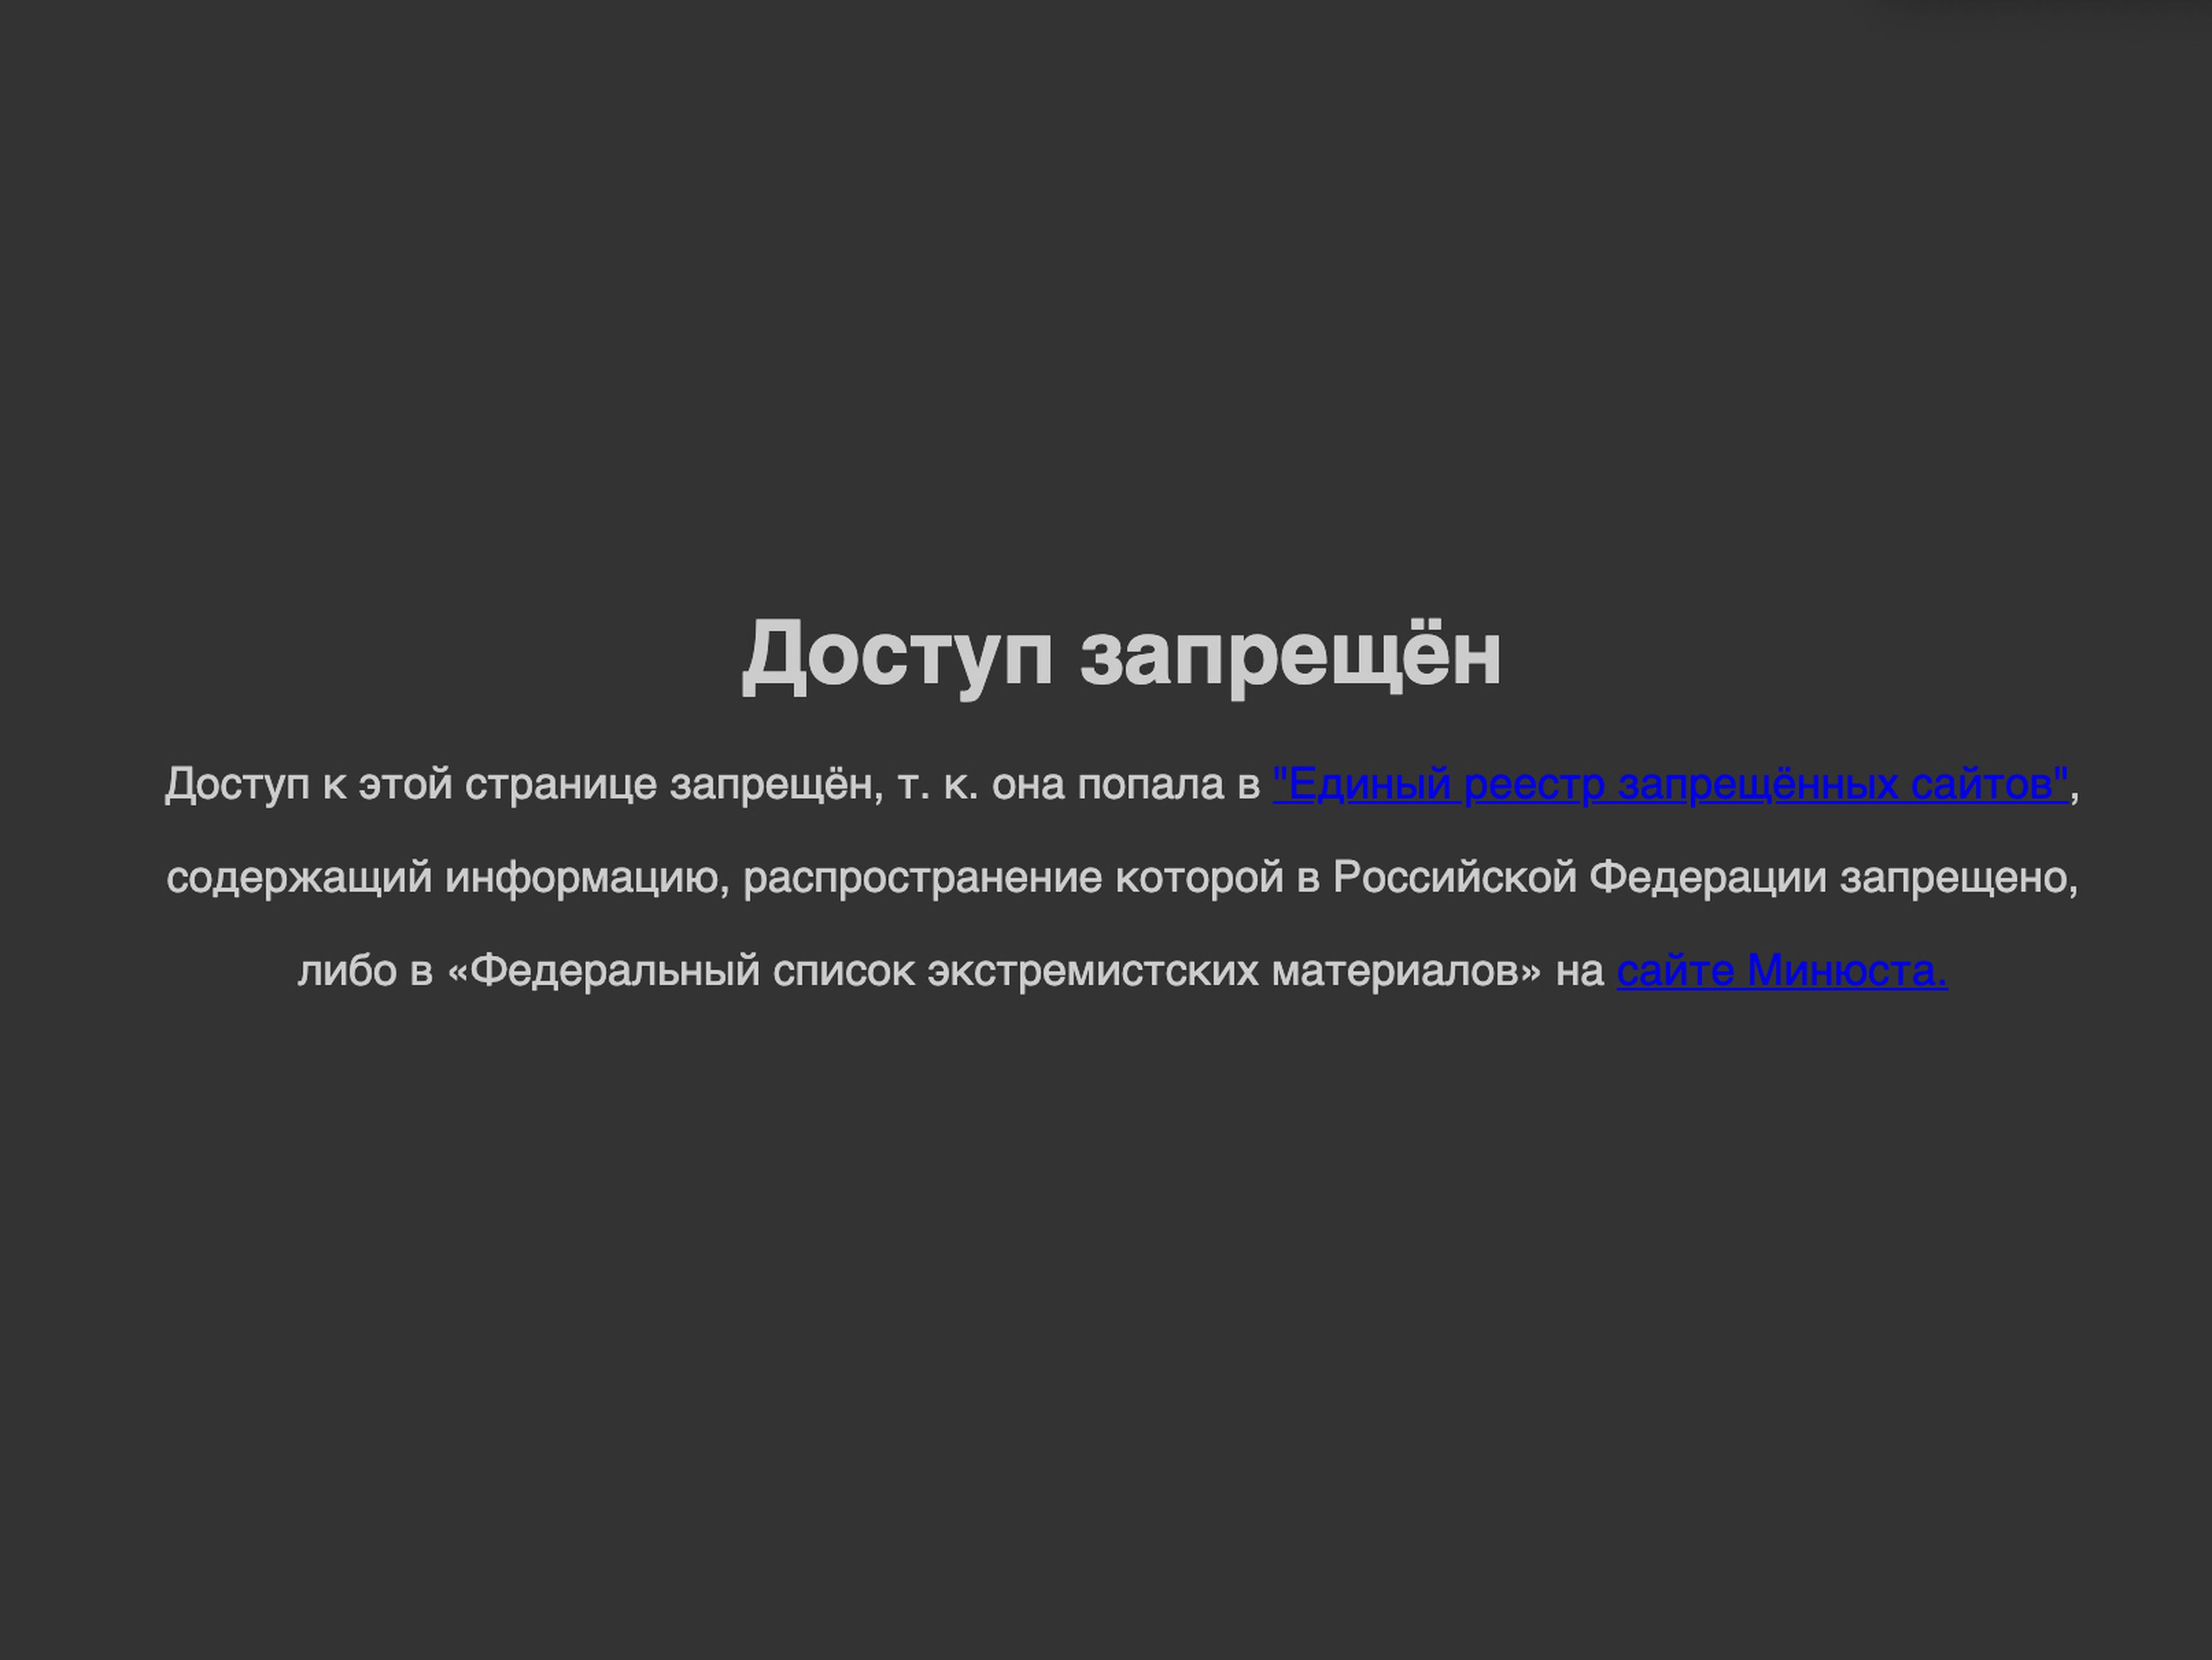 Mensaje de error de una dirección IP rusa que intenta acceder a Facebook.